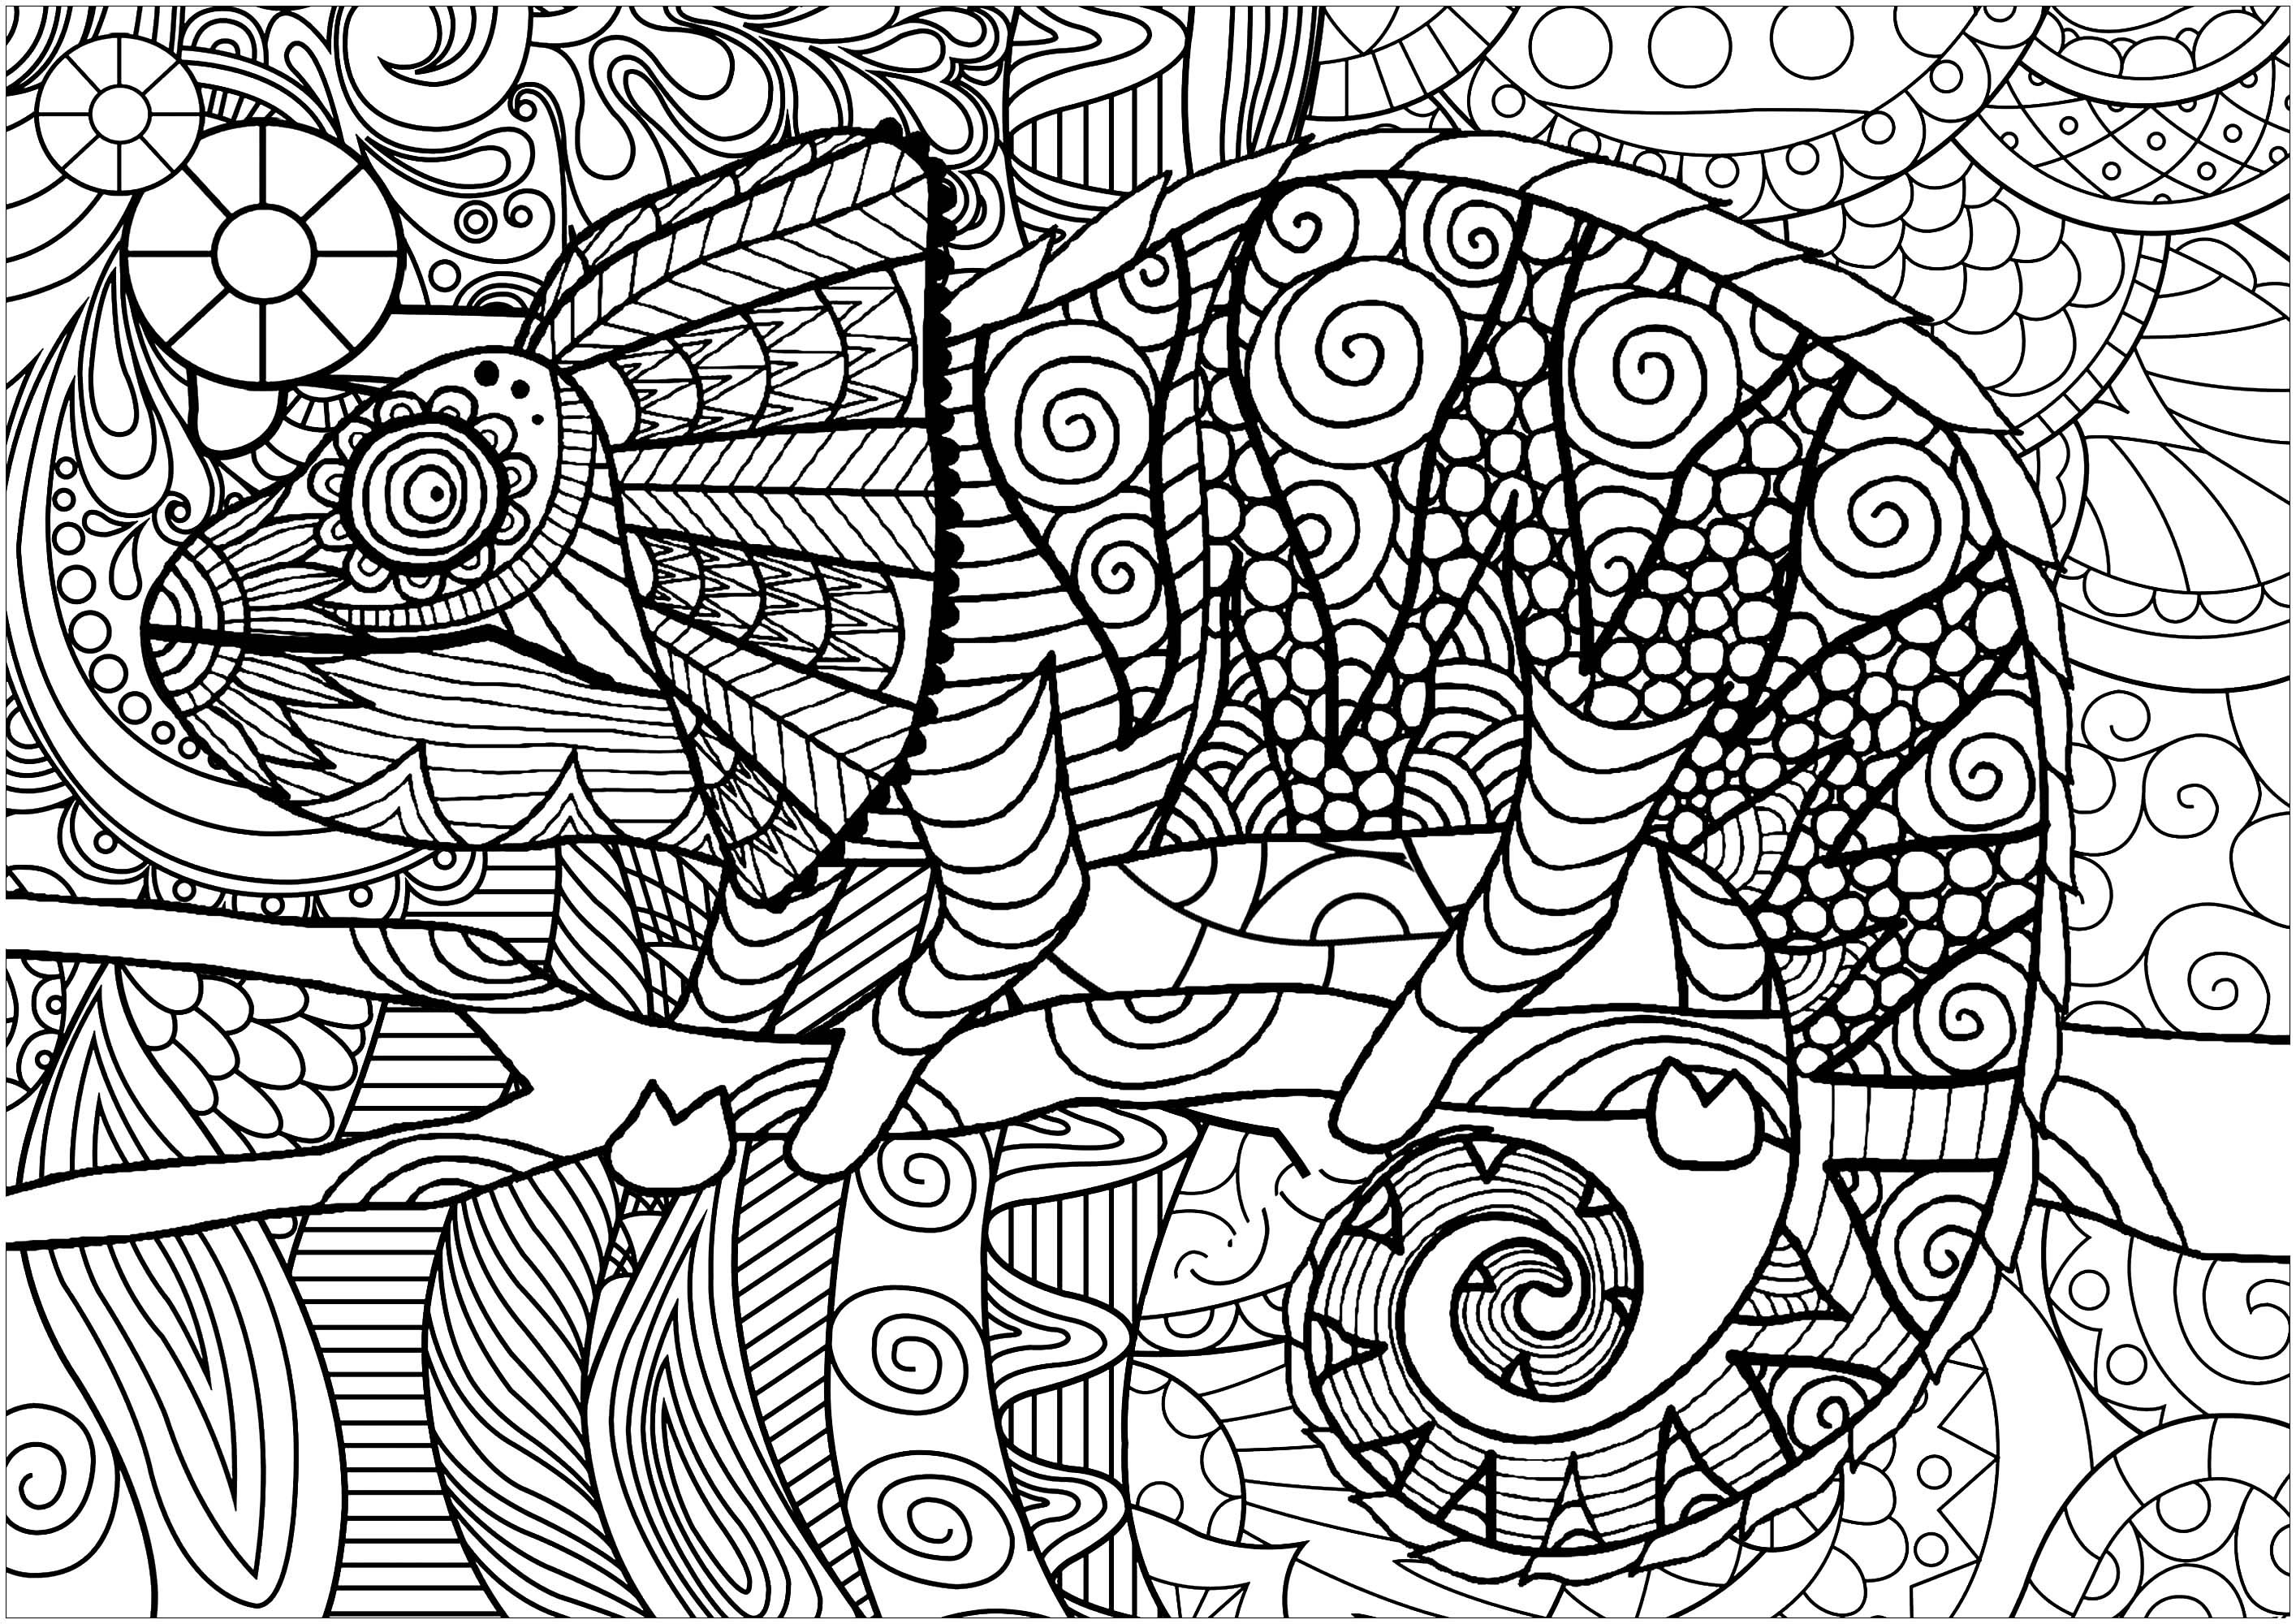 Unglaubliches Chamäleon, gezeichnet von Bimdeedee, mit einem von unserem Partner Caillou entworfenen Muster.